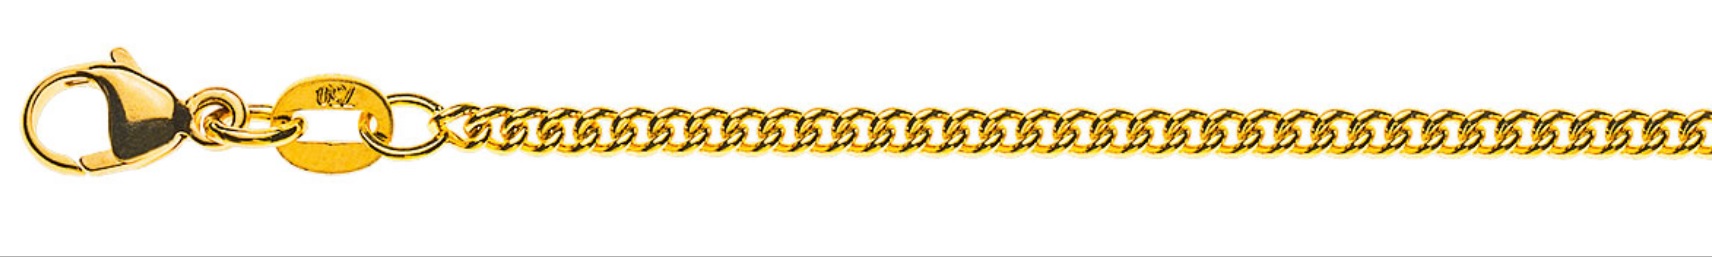 AURONOS Prestige Halskette Gelbgold 18K Rundpanzerkette 50cm 2.1mm